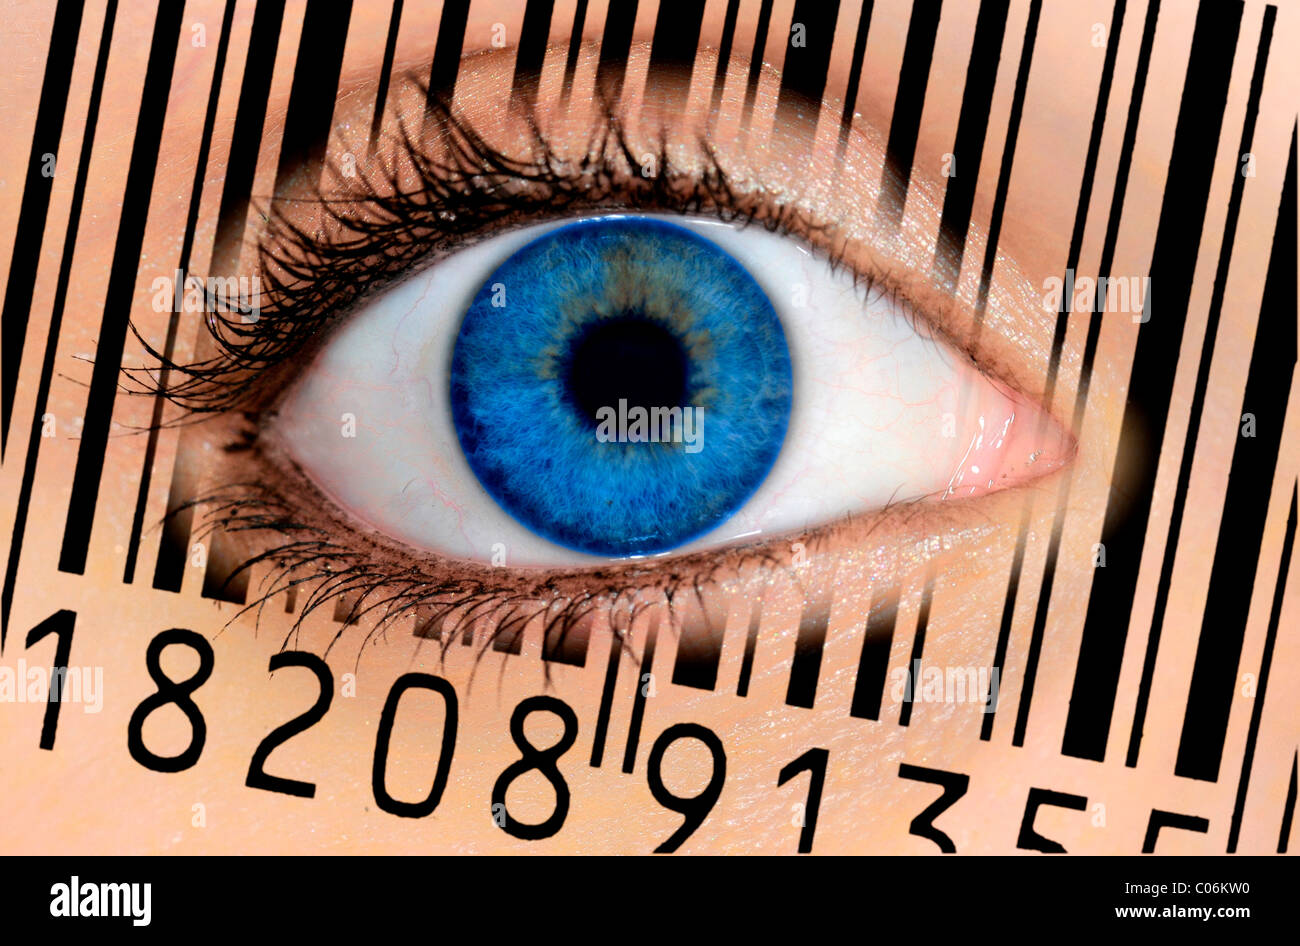 Occhio Dell'iride Immagini e Fotos Stock - Alamy